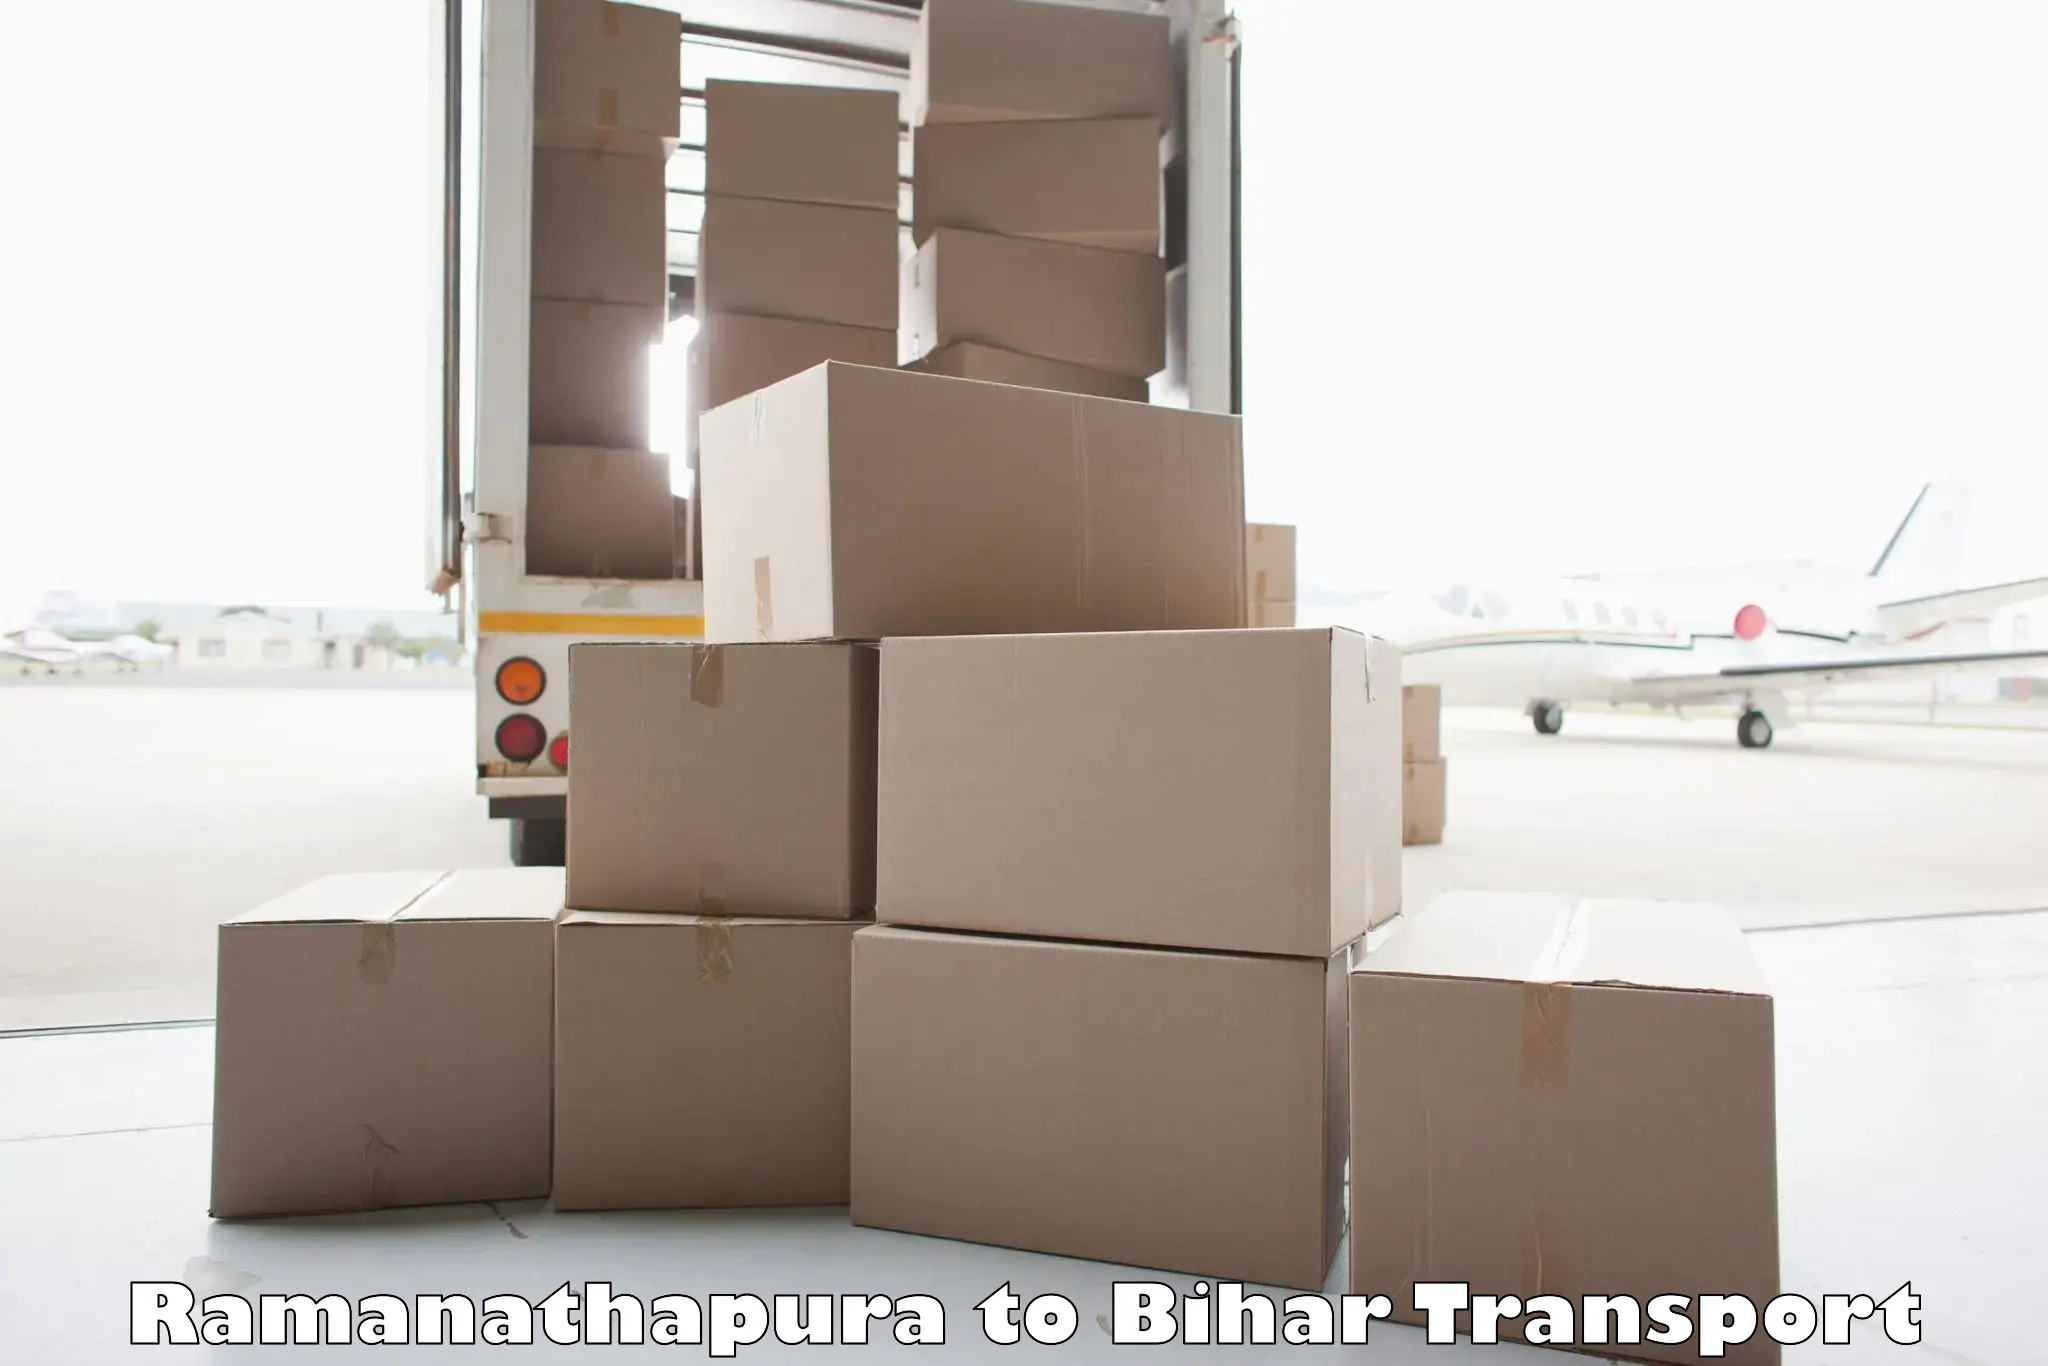 Shipping partner Ramanathapura to Fatwah